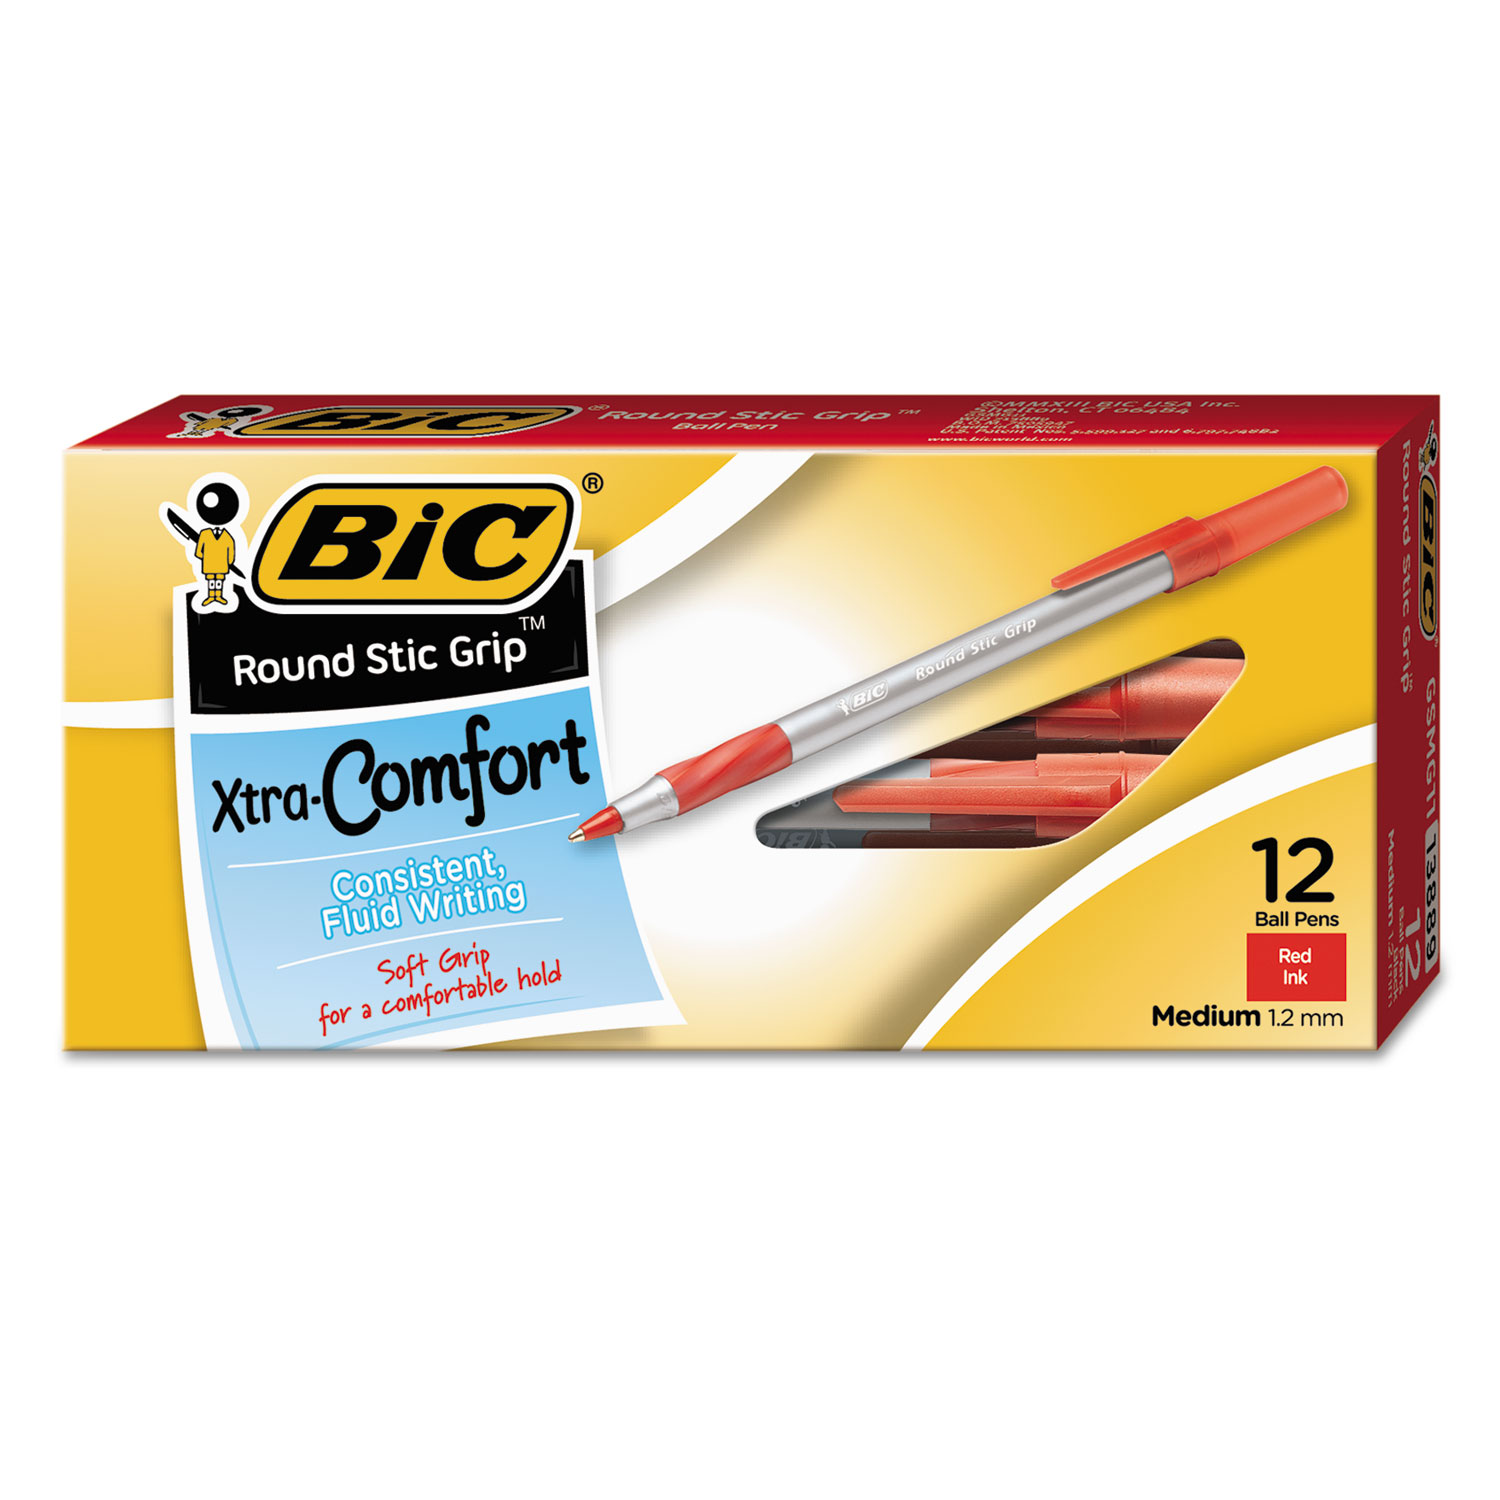 Round Stic Grip Xtra Comfort Ballpoint Pen, Red Ink, 1.2mm, Medium, Dozen